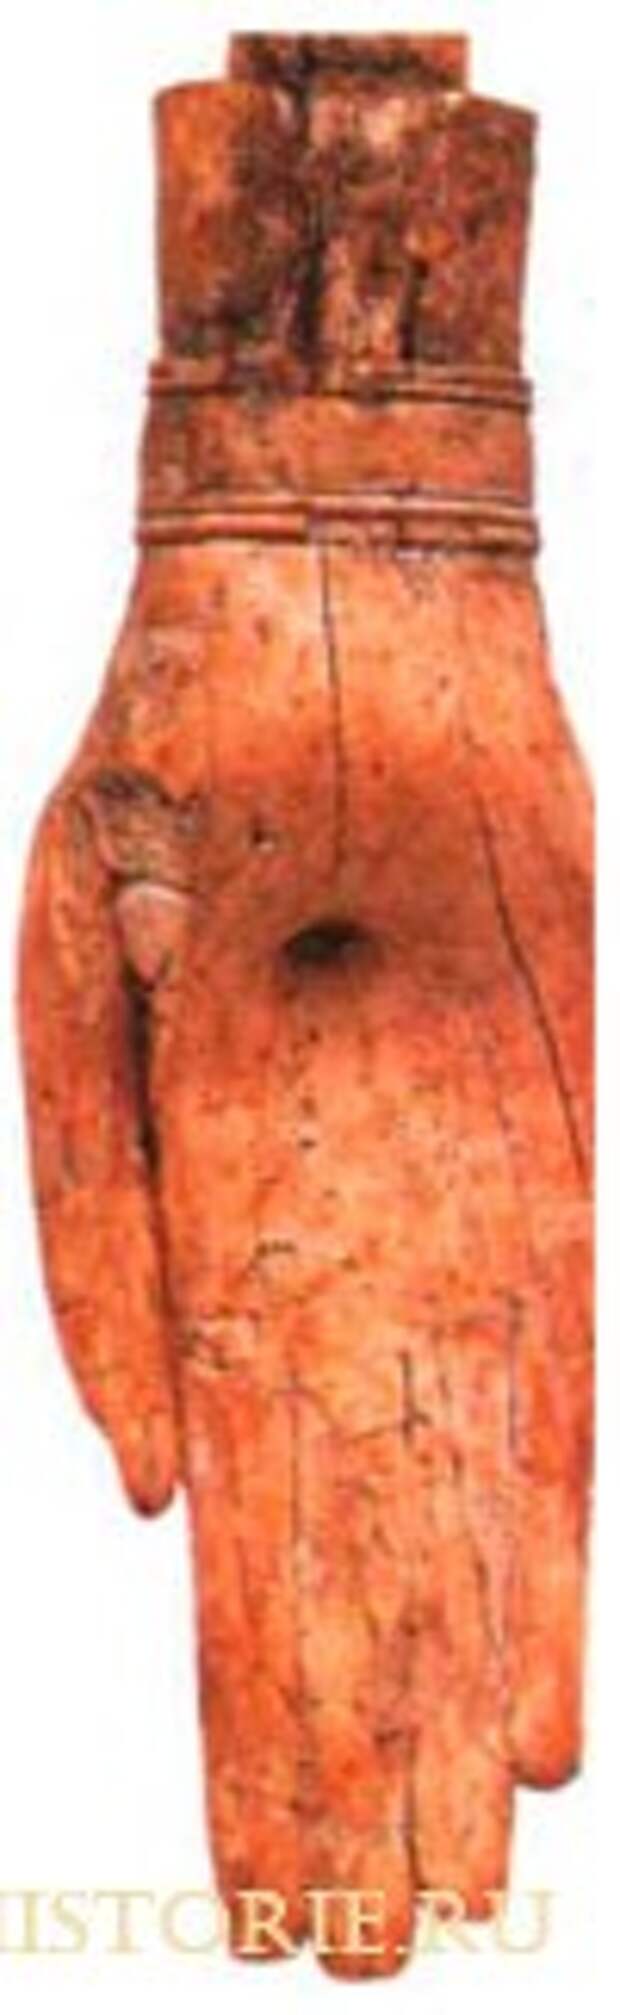 Кисть руки от статуи богини из храма ханаанейского города Лагиша.